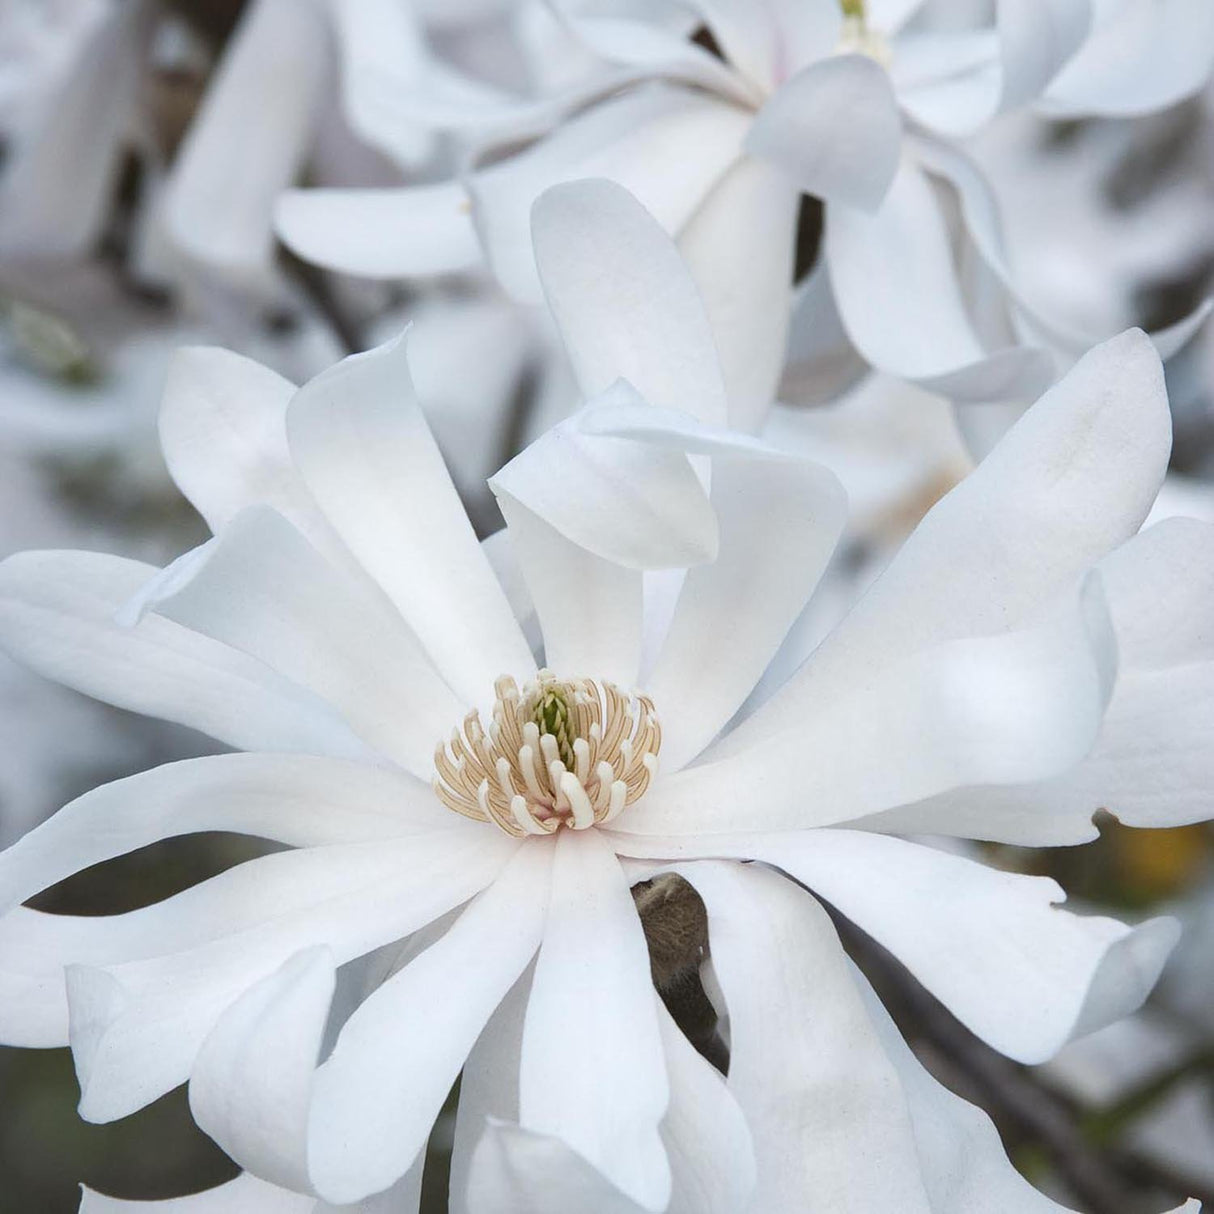 Magnolia Royal Star, Stam 60 cm inaltime, in ghiveci de 7.5L